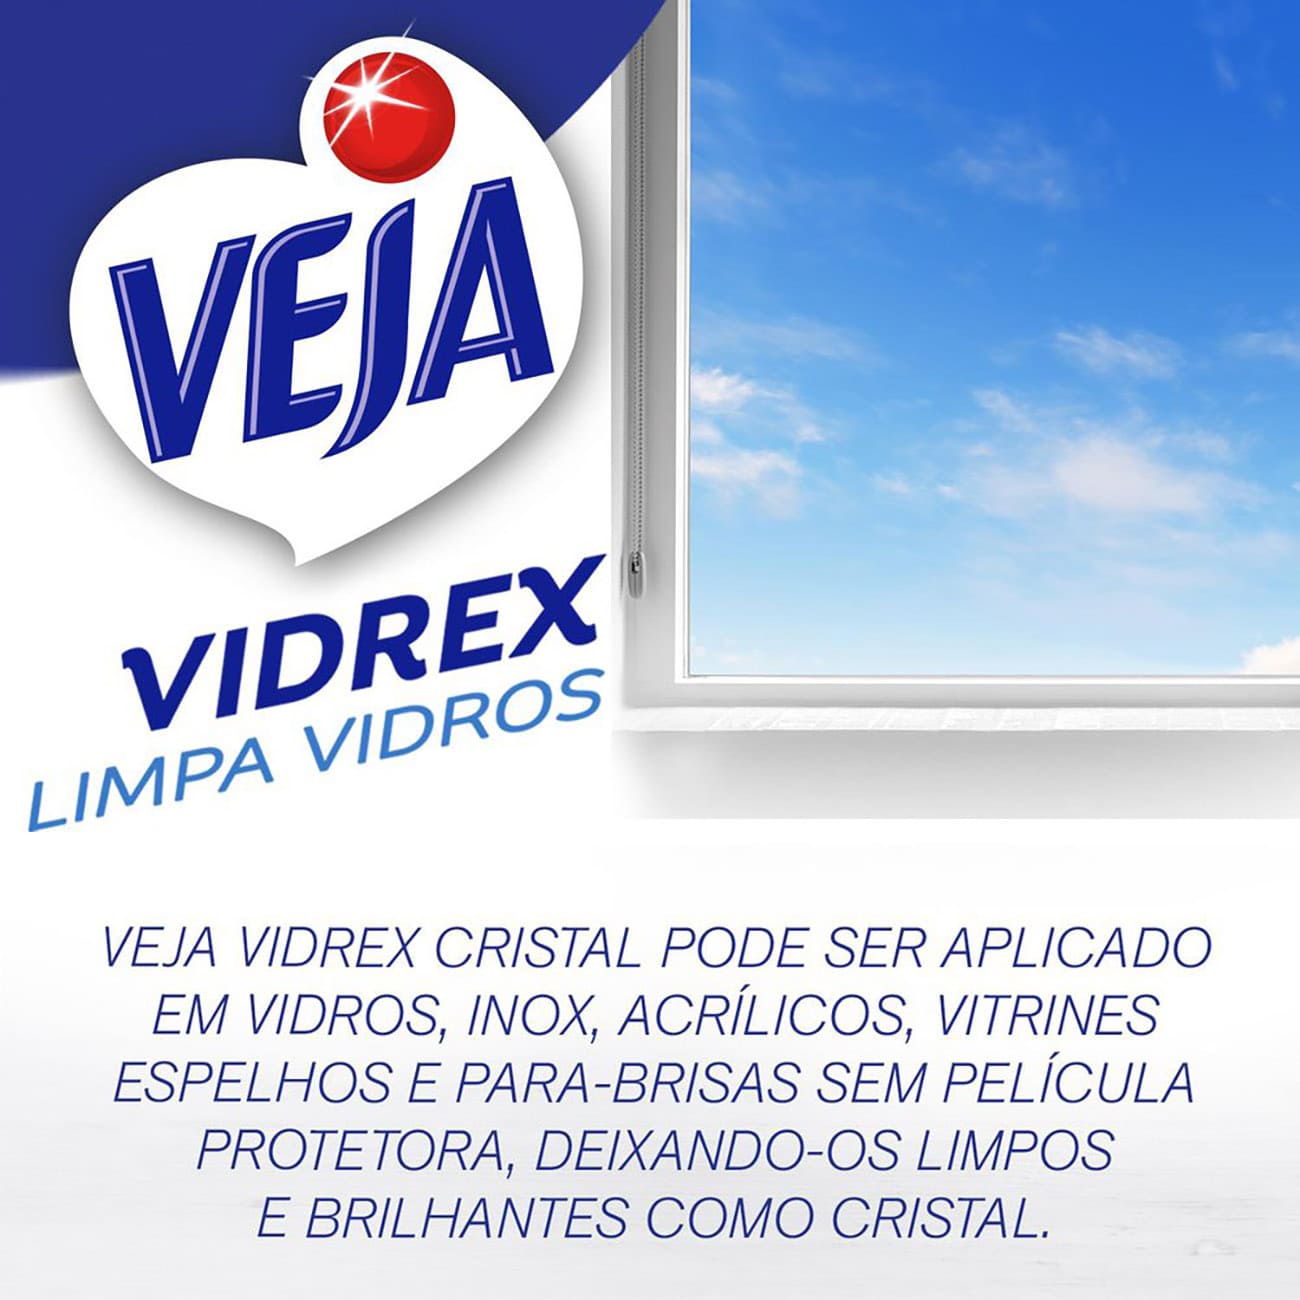 Limpa Vidros Veja Vidrex Tradicional Squeeze 500mL com 20% de desconto